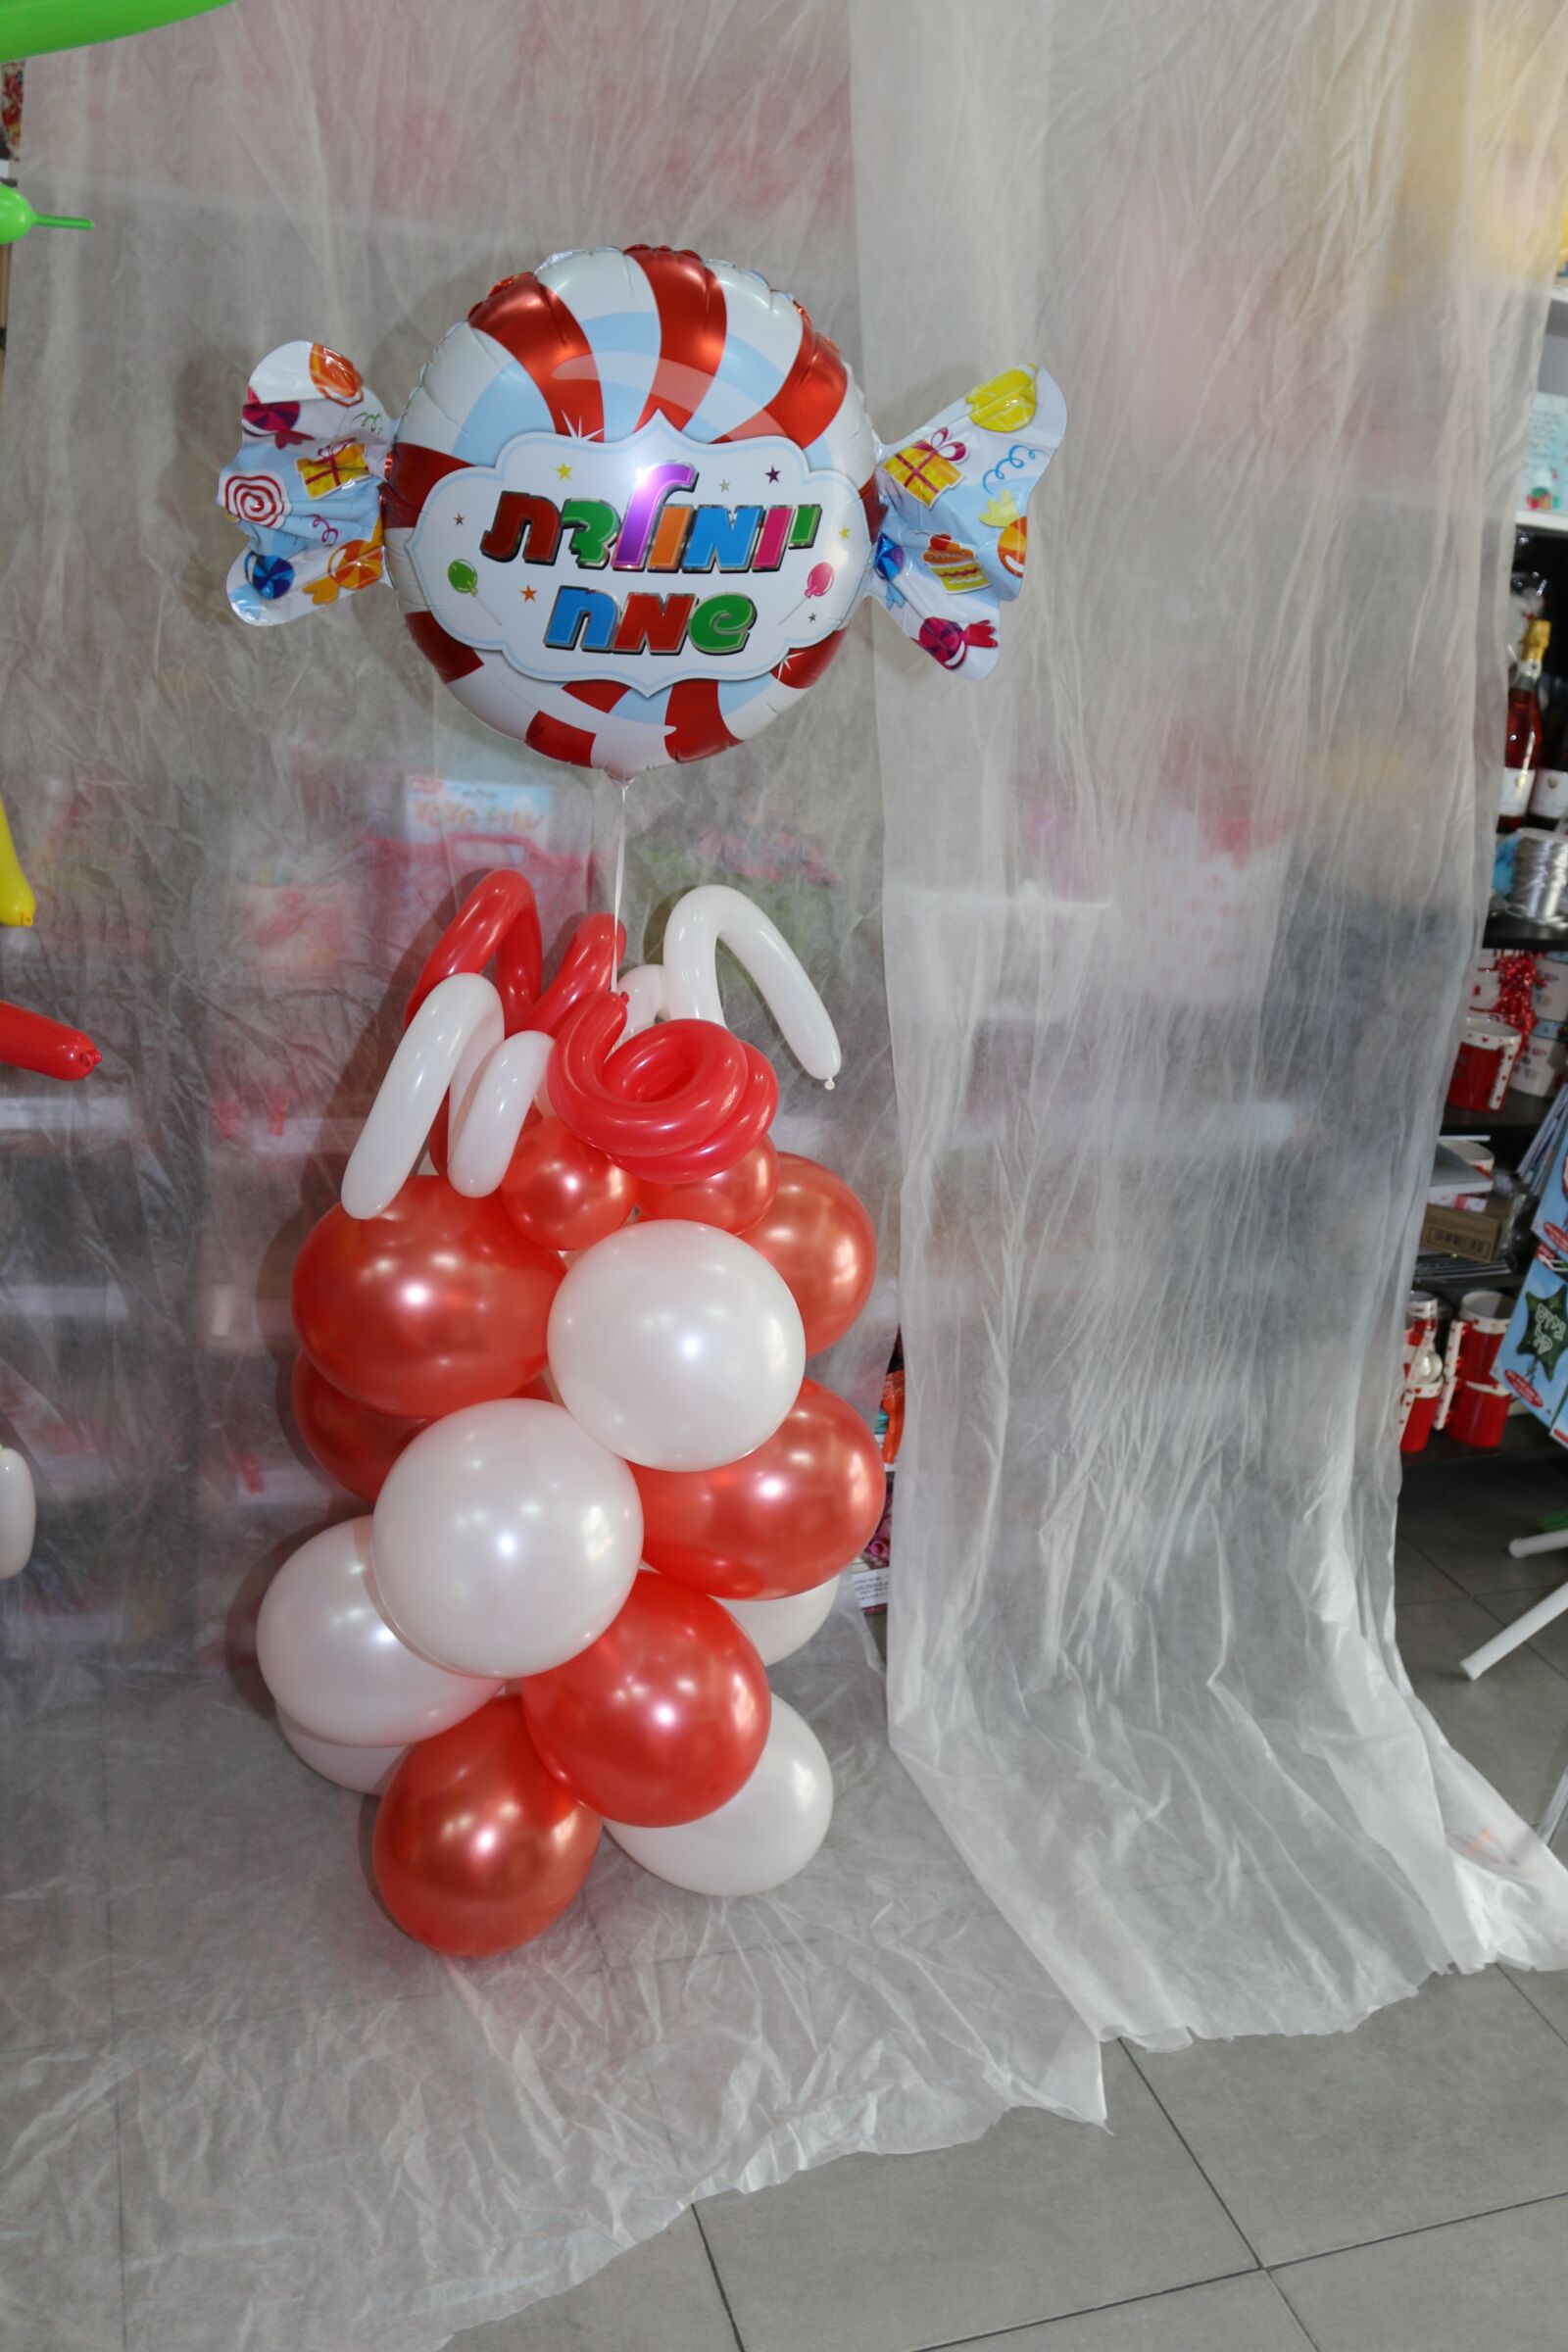 Canon EOS 70D sample photo. Ballons, ballonb, happy birthday photography